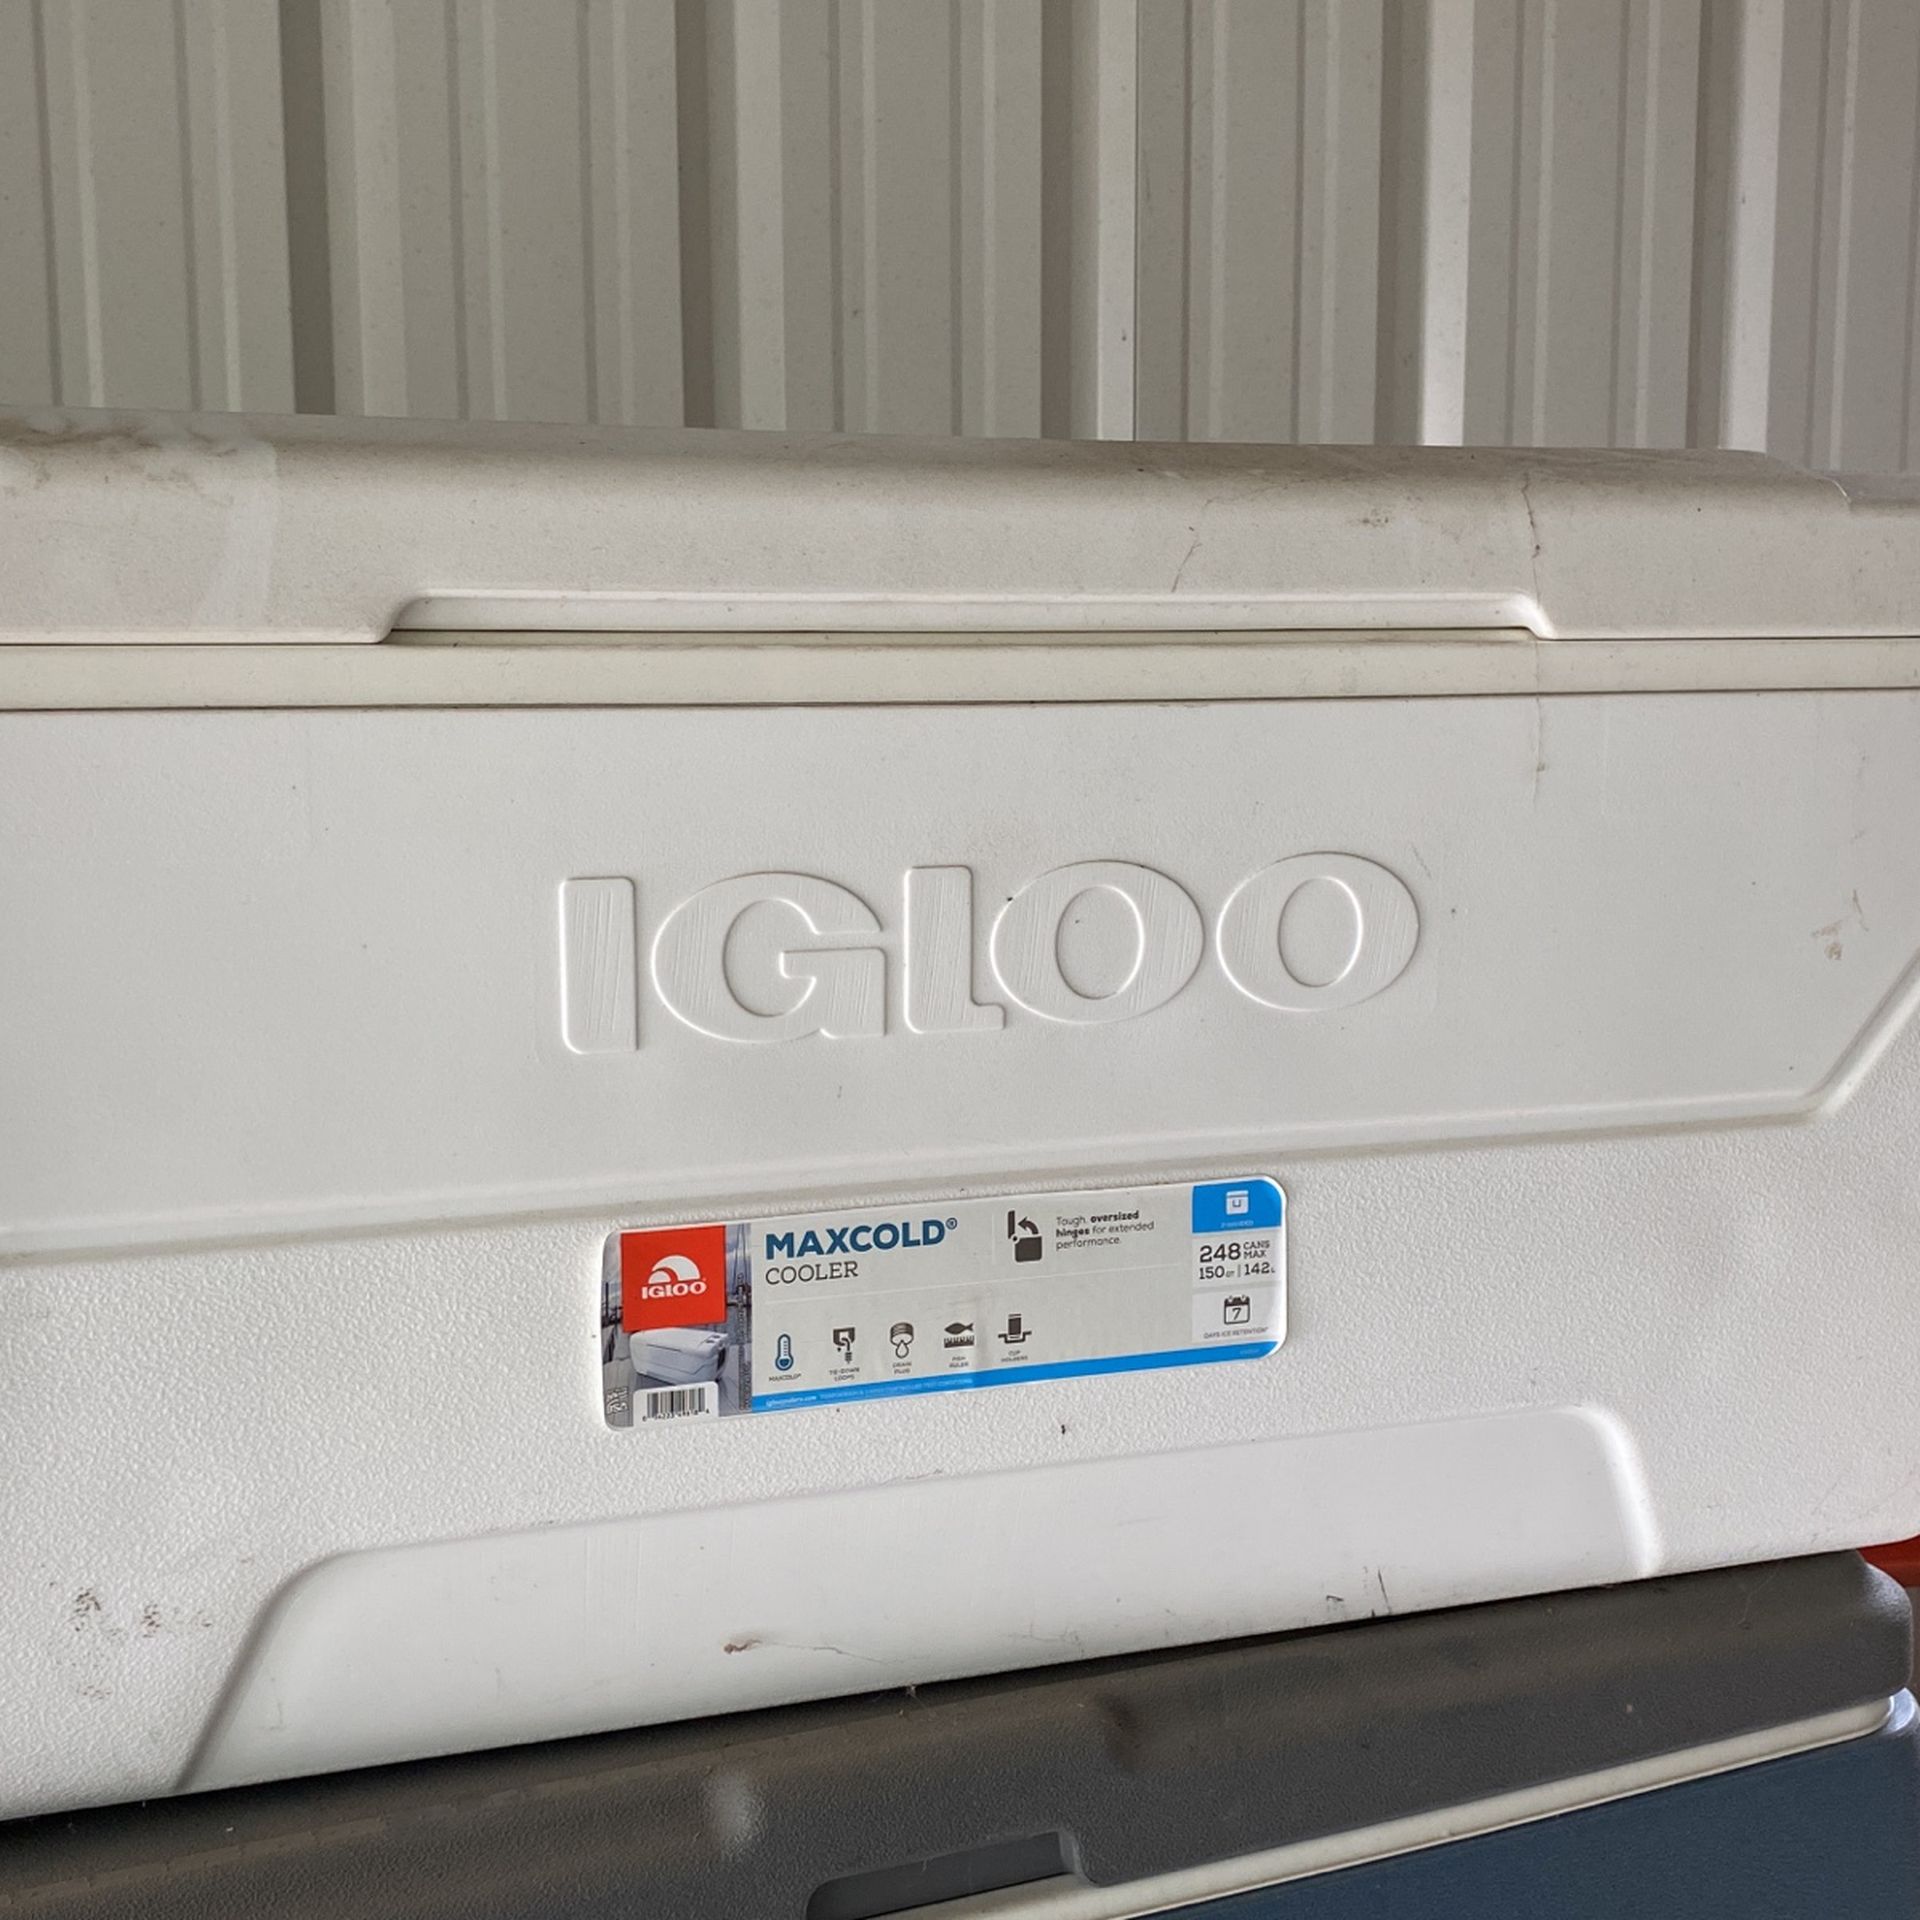 New Igloo Cooler